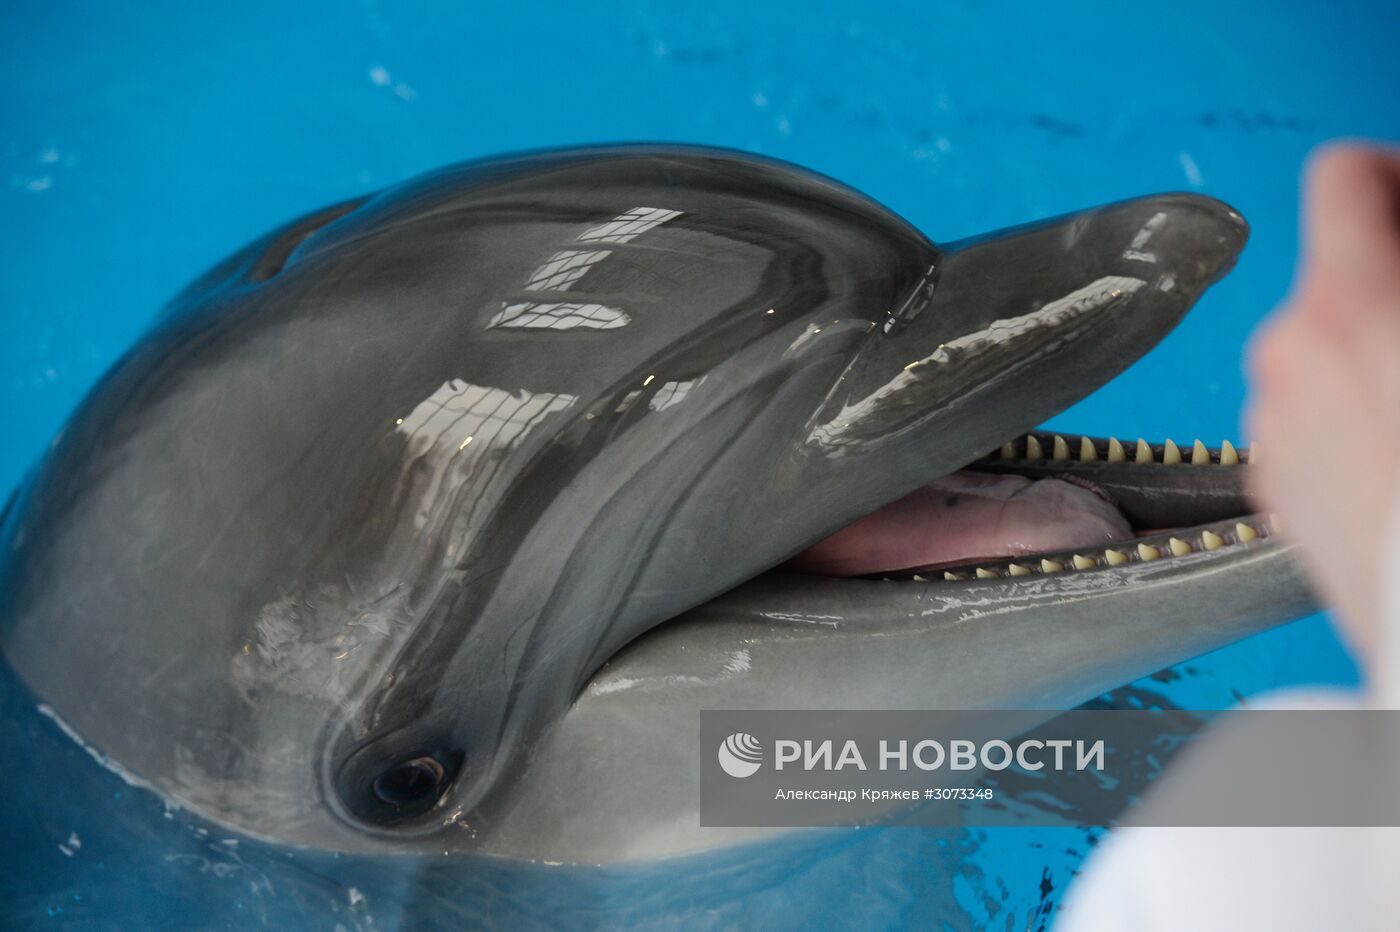 Центр океанографии и морской биологии "Дельфиния" в Новосибирске